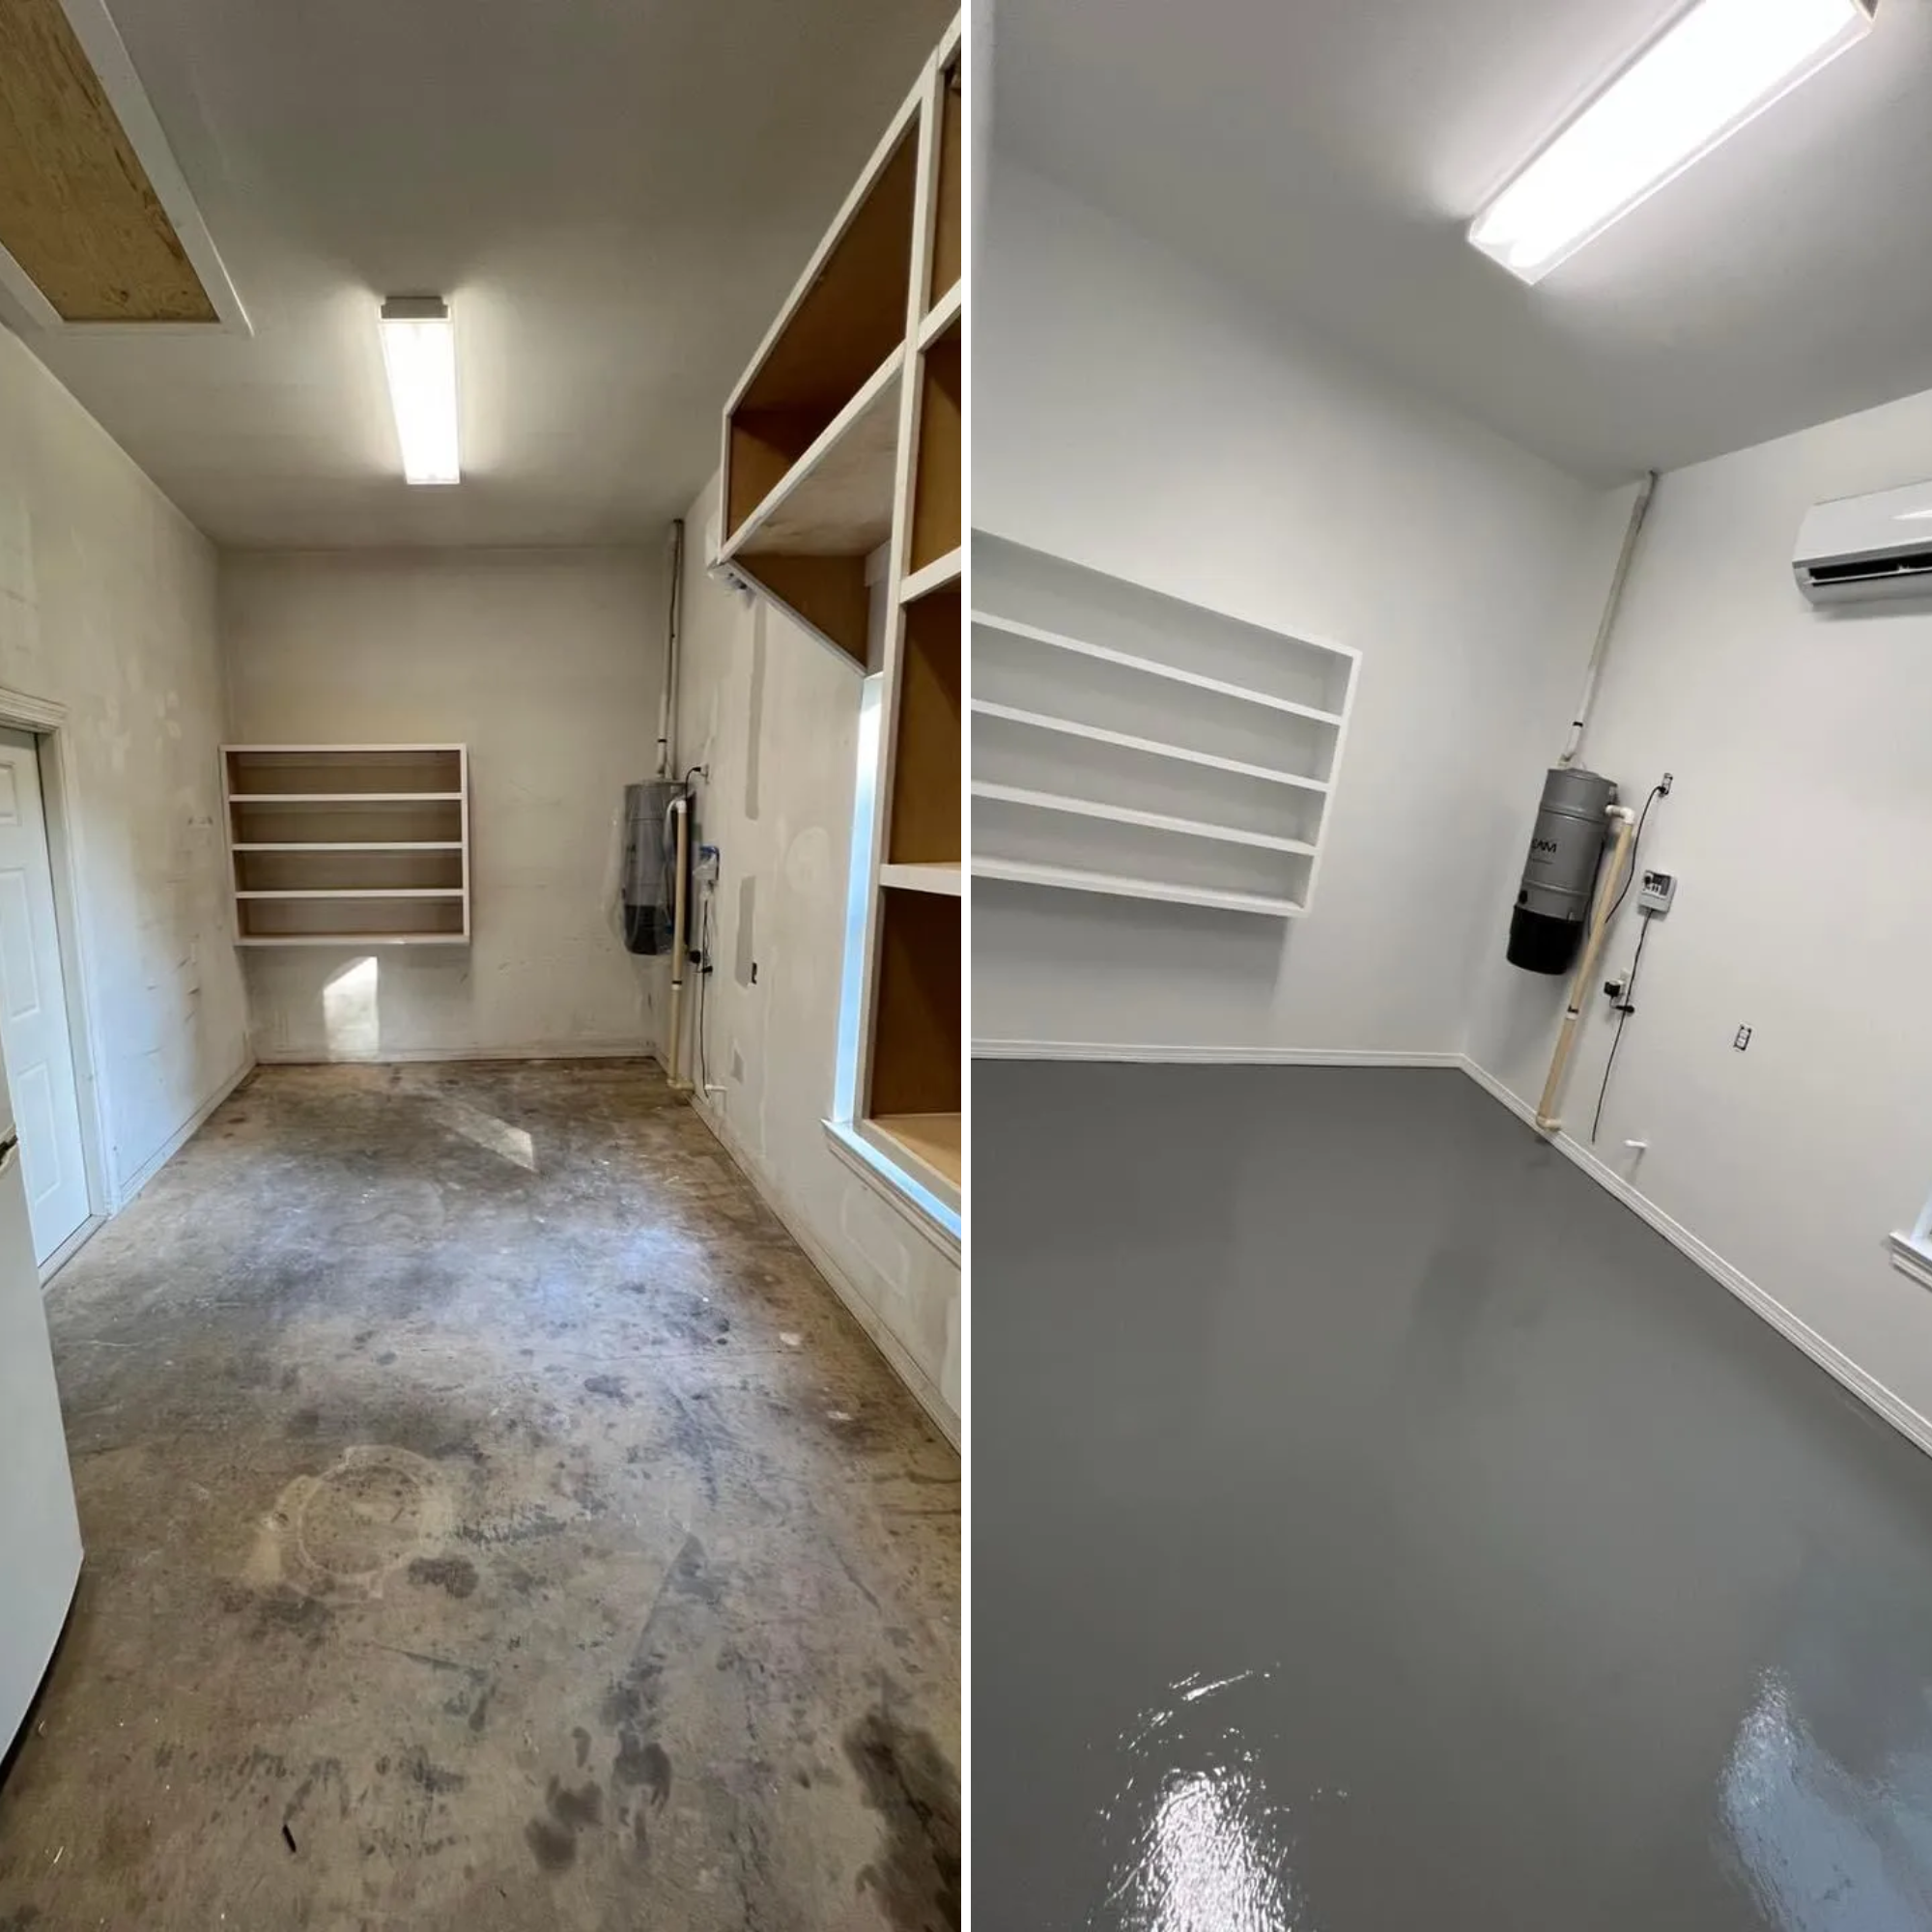 Painting concrete floors  for D&L Construction Services LLC in Mobile, AL